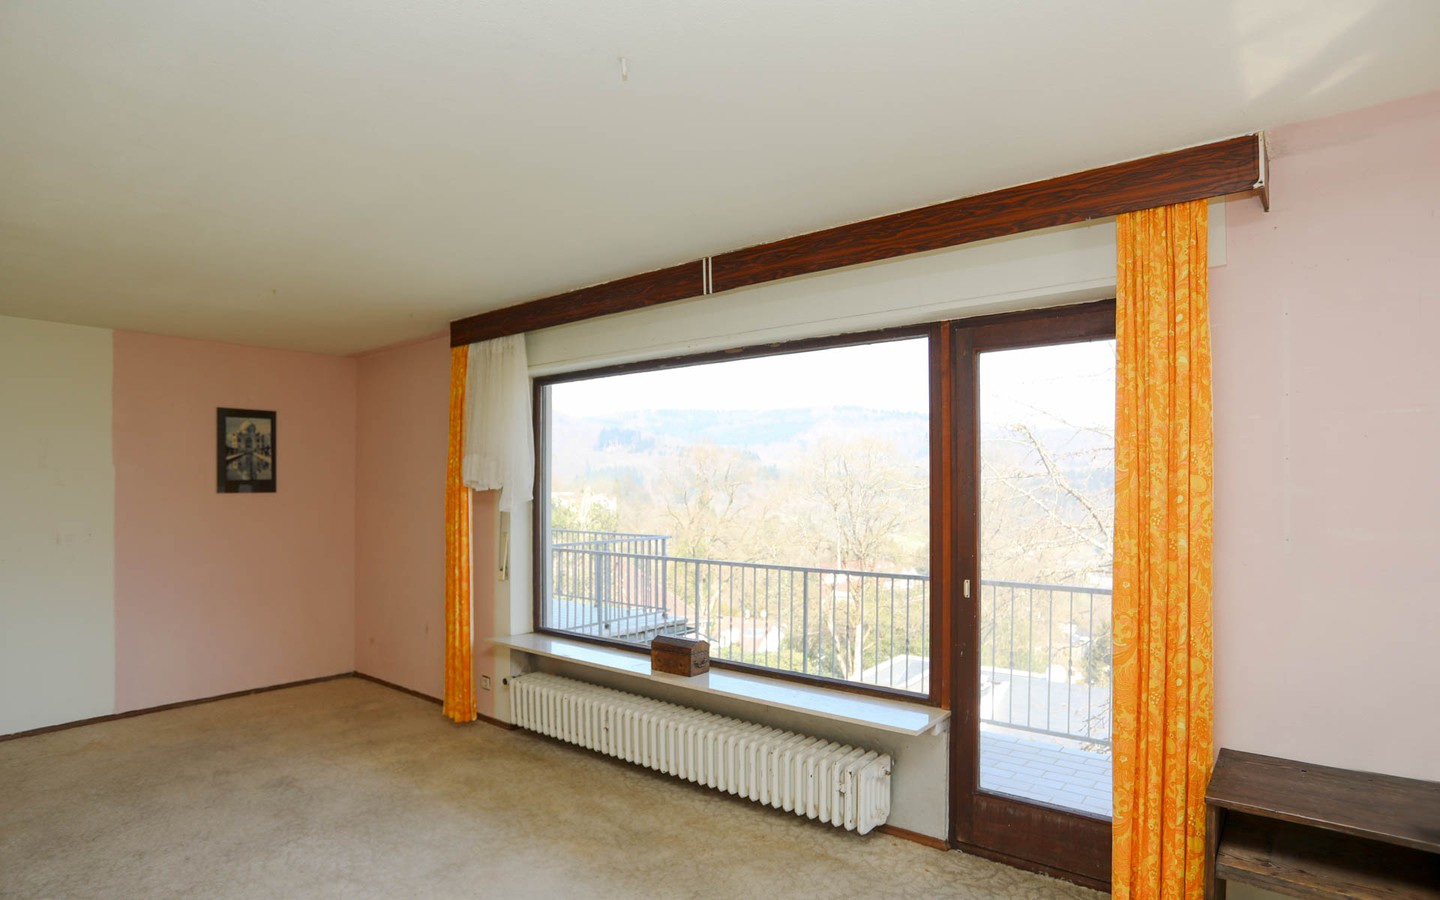 Zimmer OG - In Bestlage von HD-Schlierbach: Beeindruckendes Anwesen auf über 1.200 m² großem Grundstück